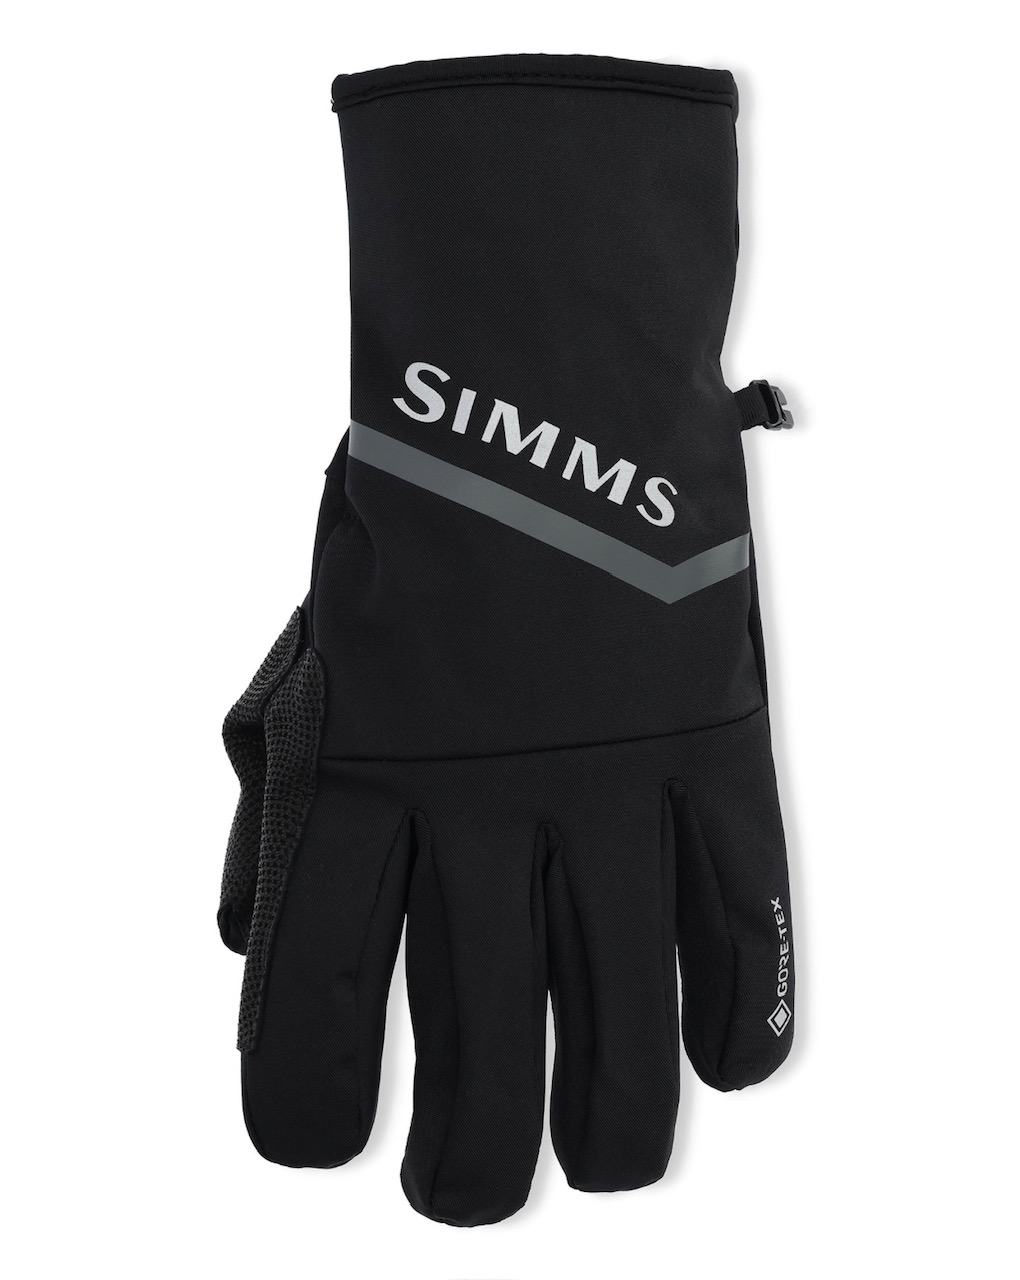 Simms ProDry Gore-Tex Glove + Liner - Black - Medium